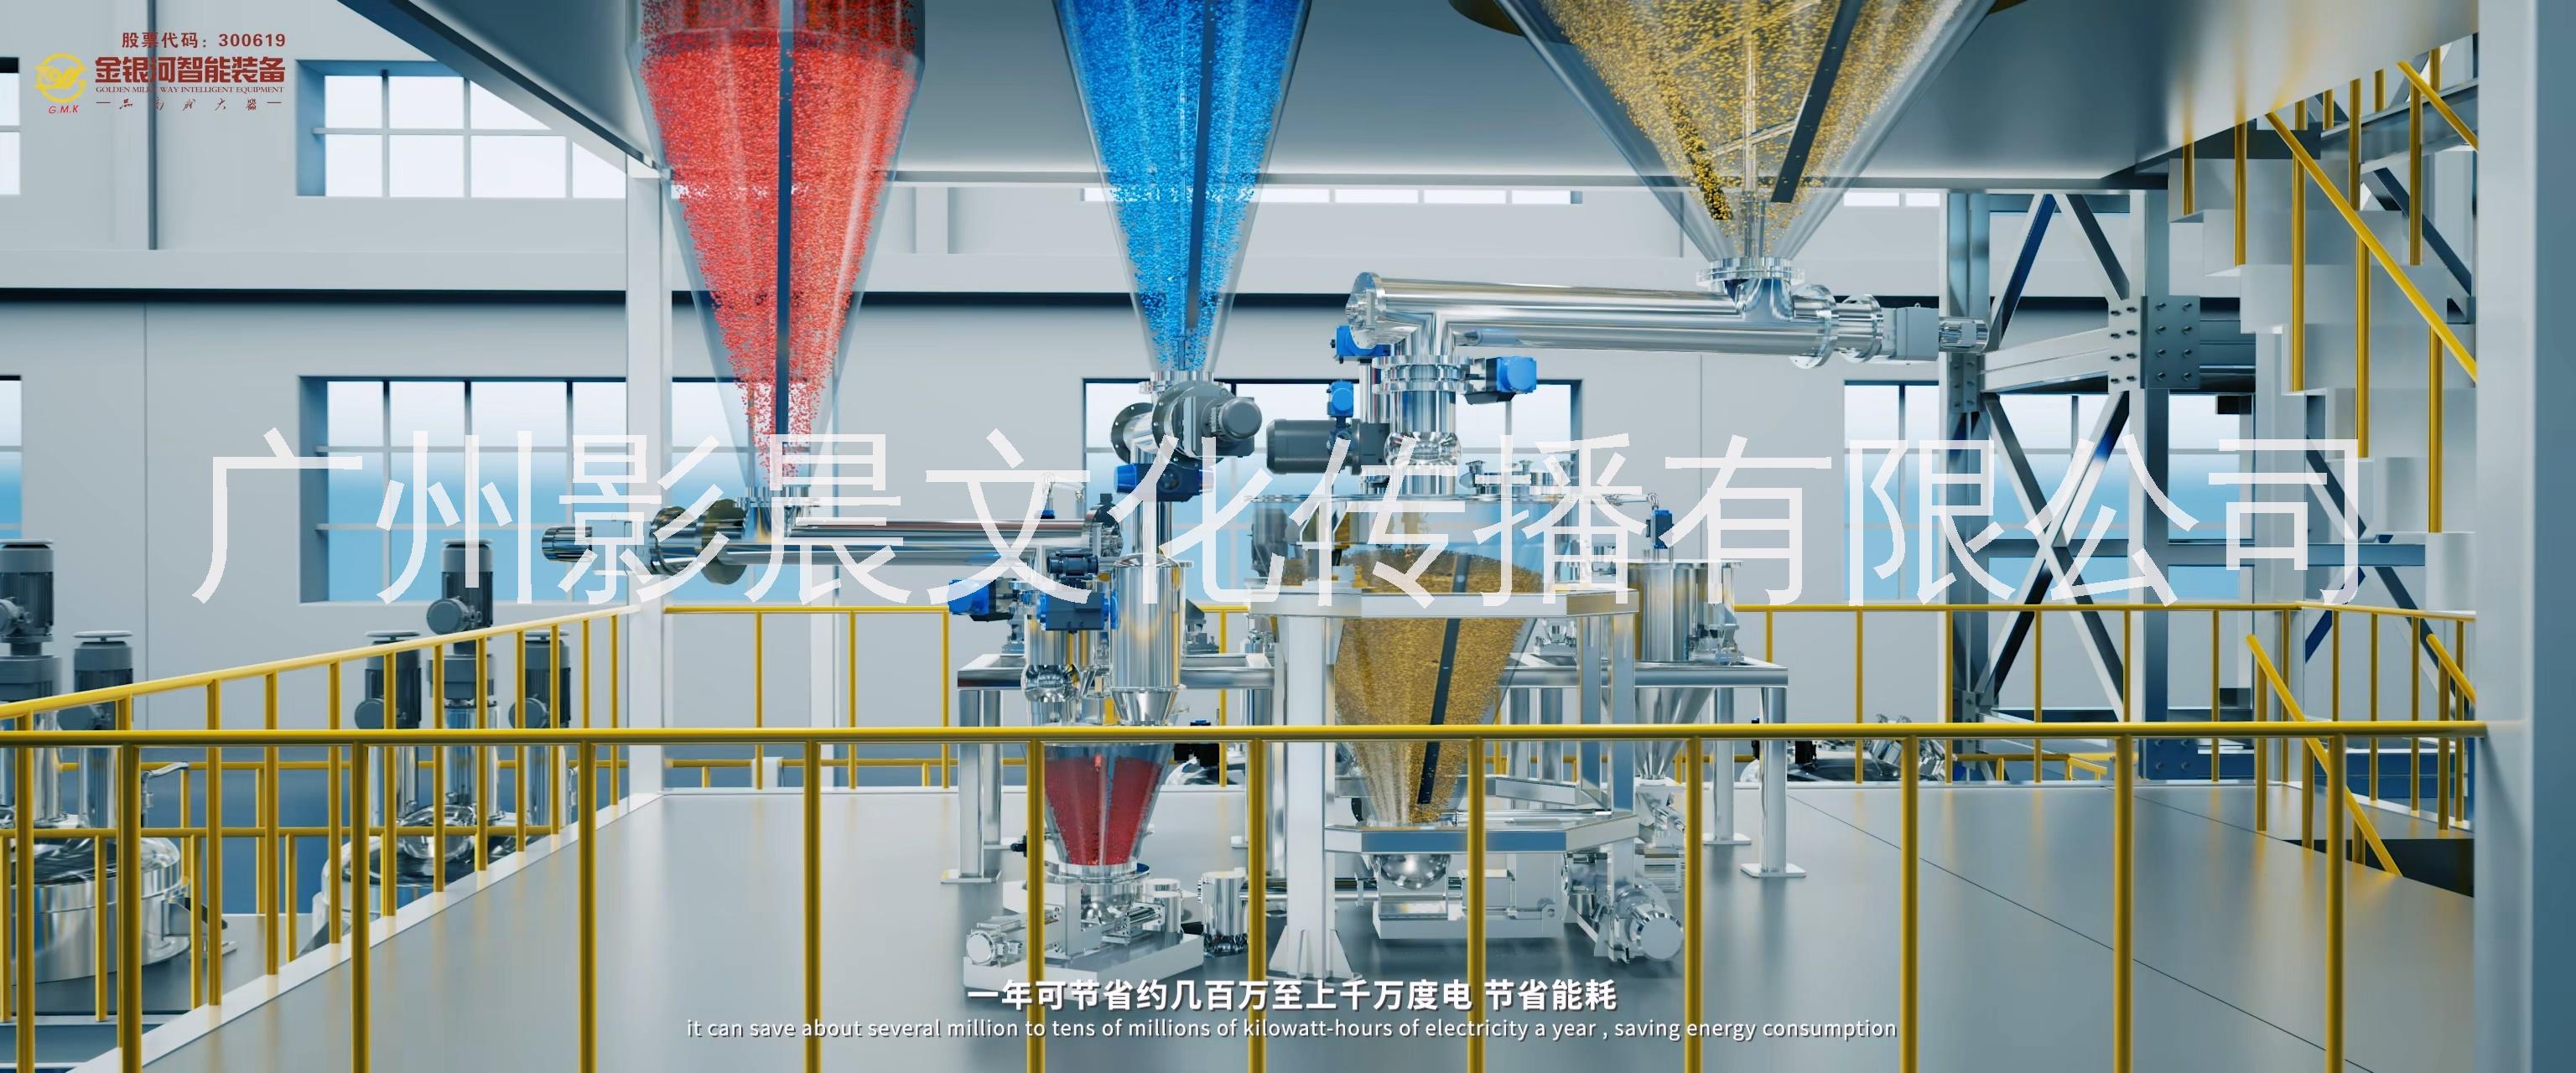 广州天河酒店宣传片制作,酒店宣传视频制作软件图片